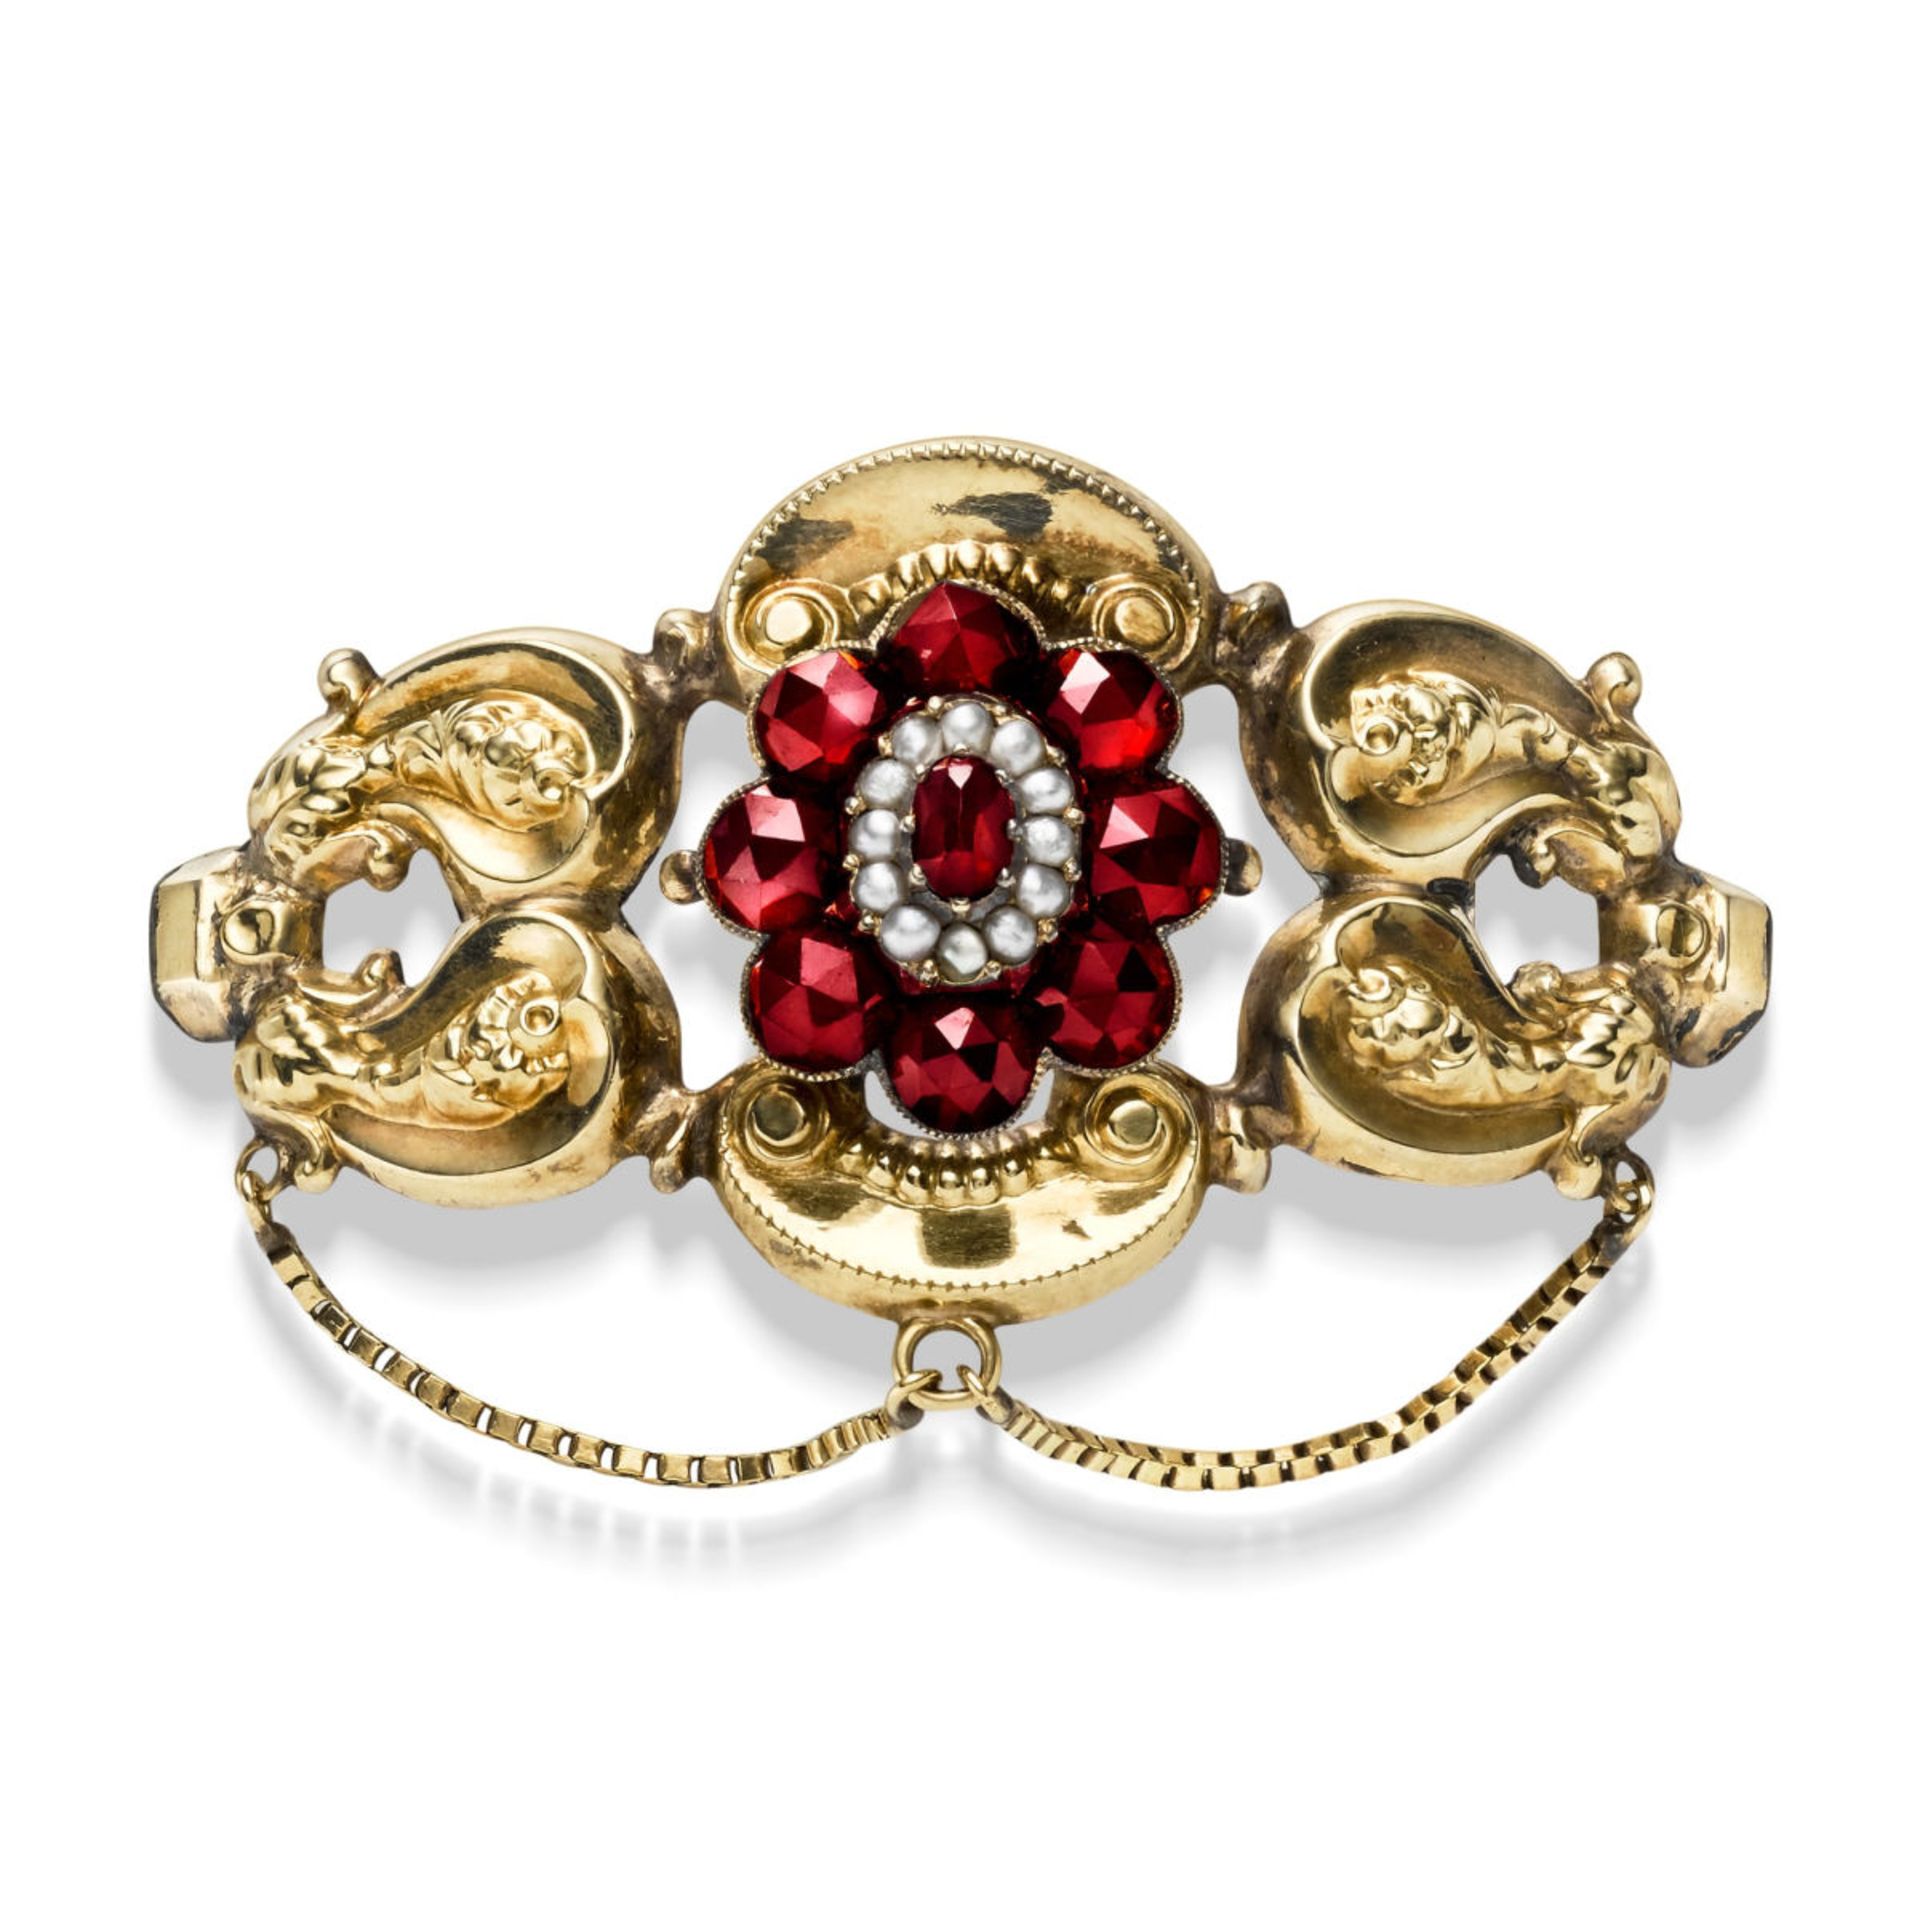 Biedermeier garnet brooch with pearls 